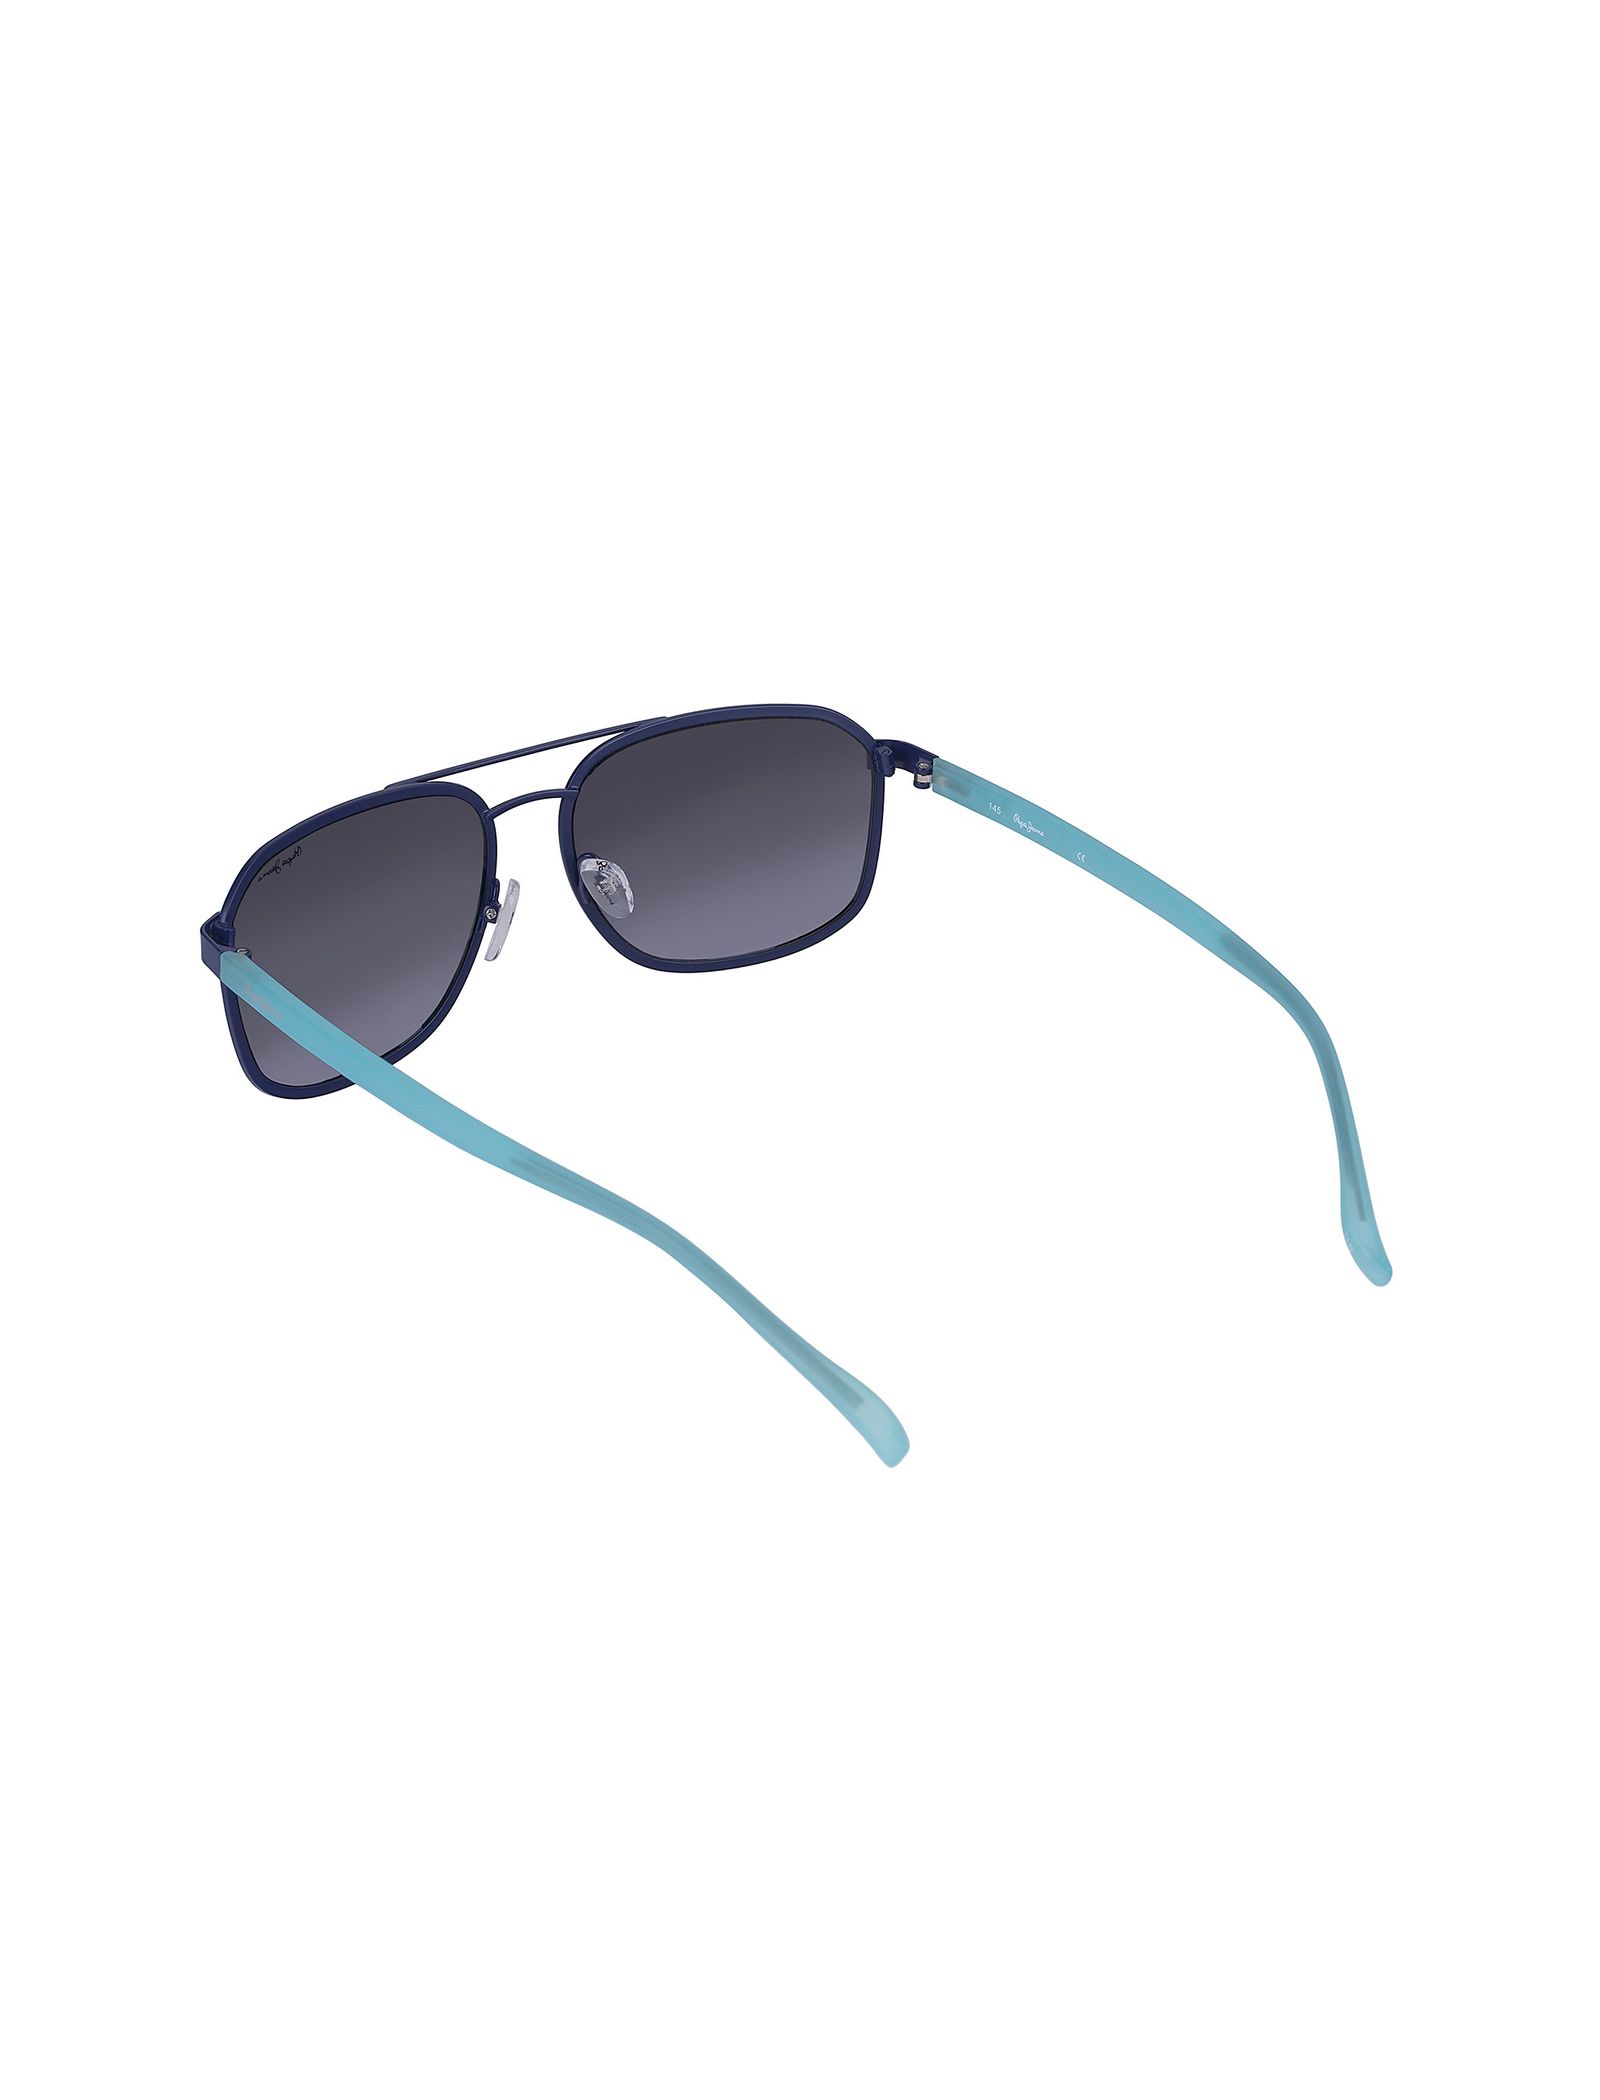 عینک آفتابی خلبانی زنانه - پپه جینز - آبي - 5